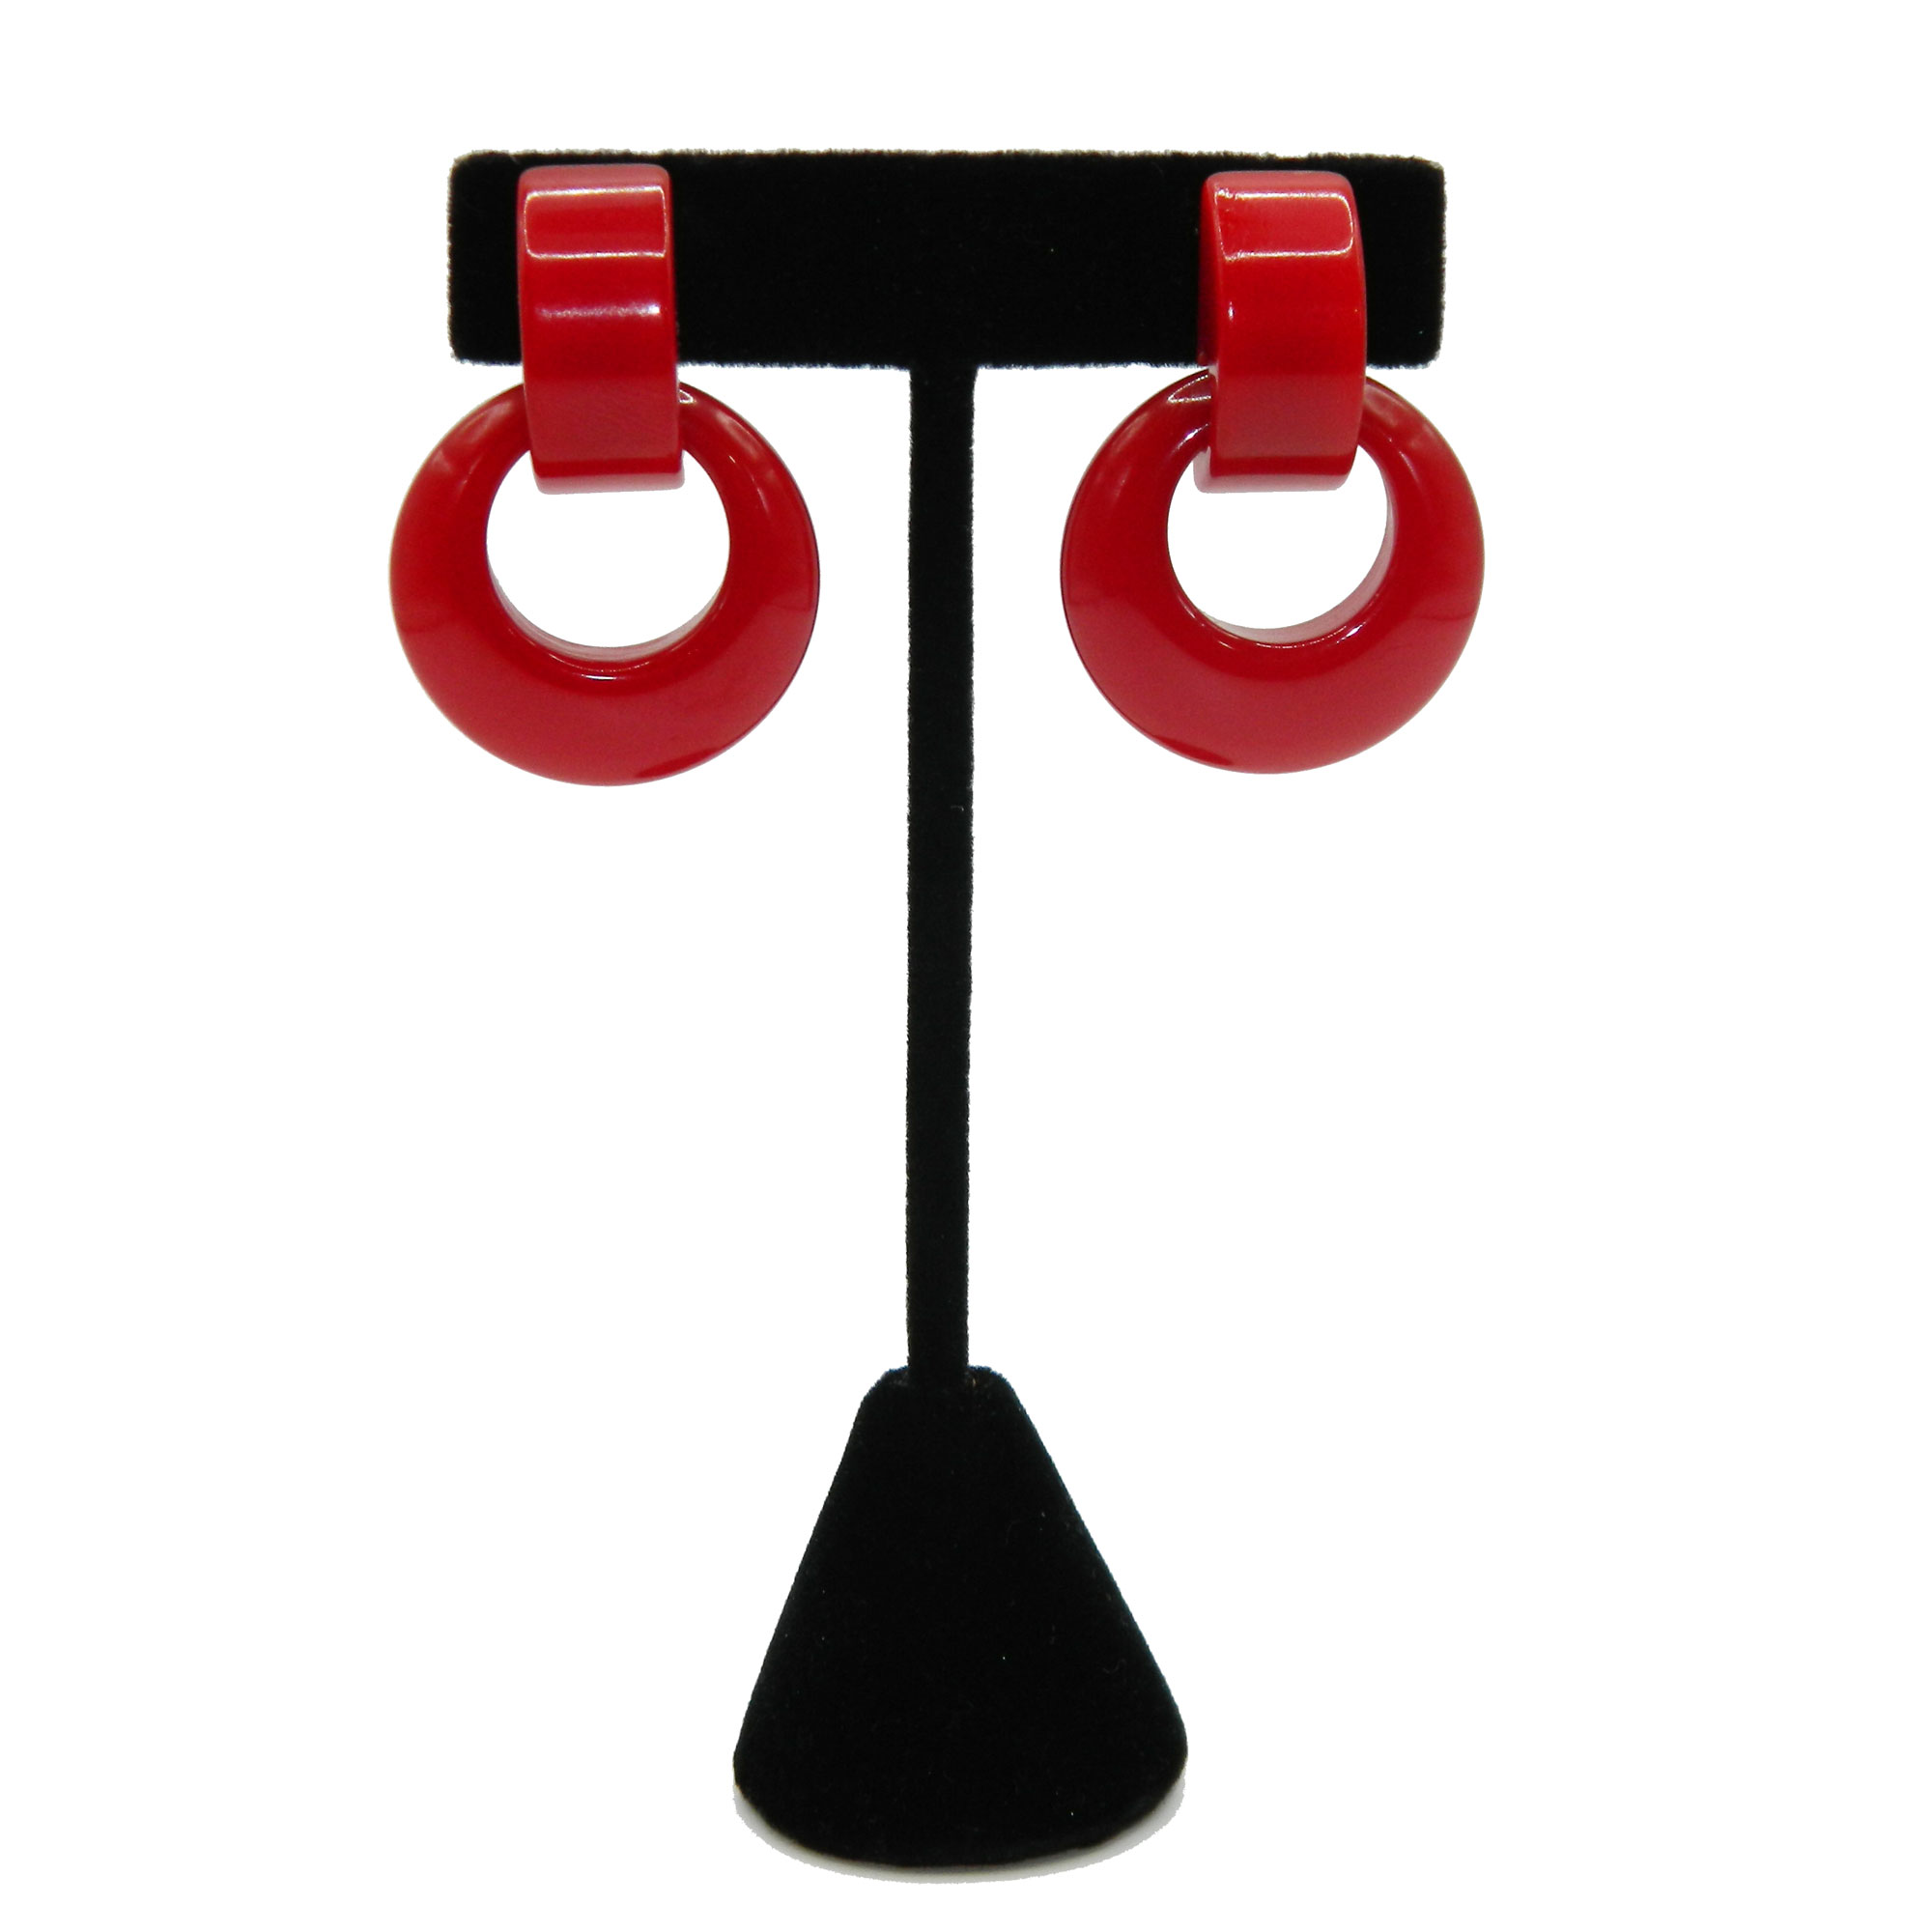 Red bakelite drop earrings